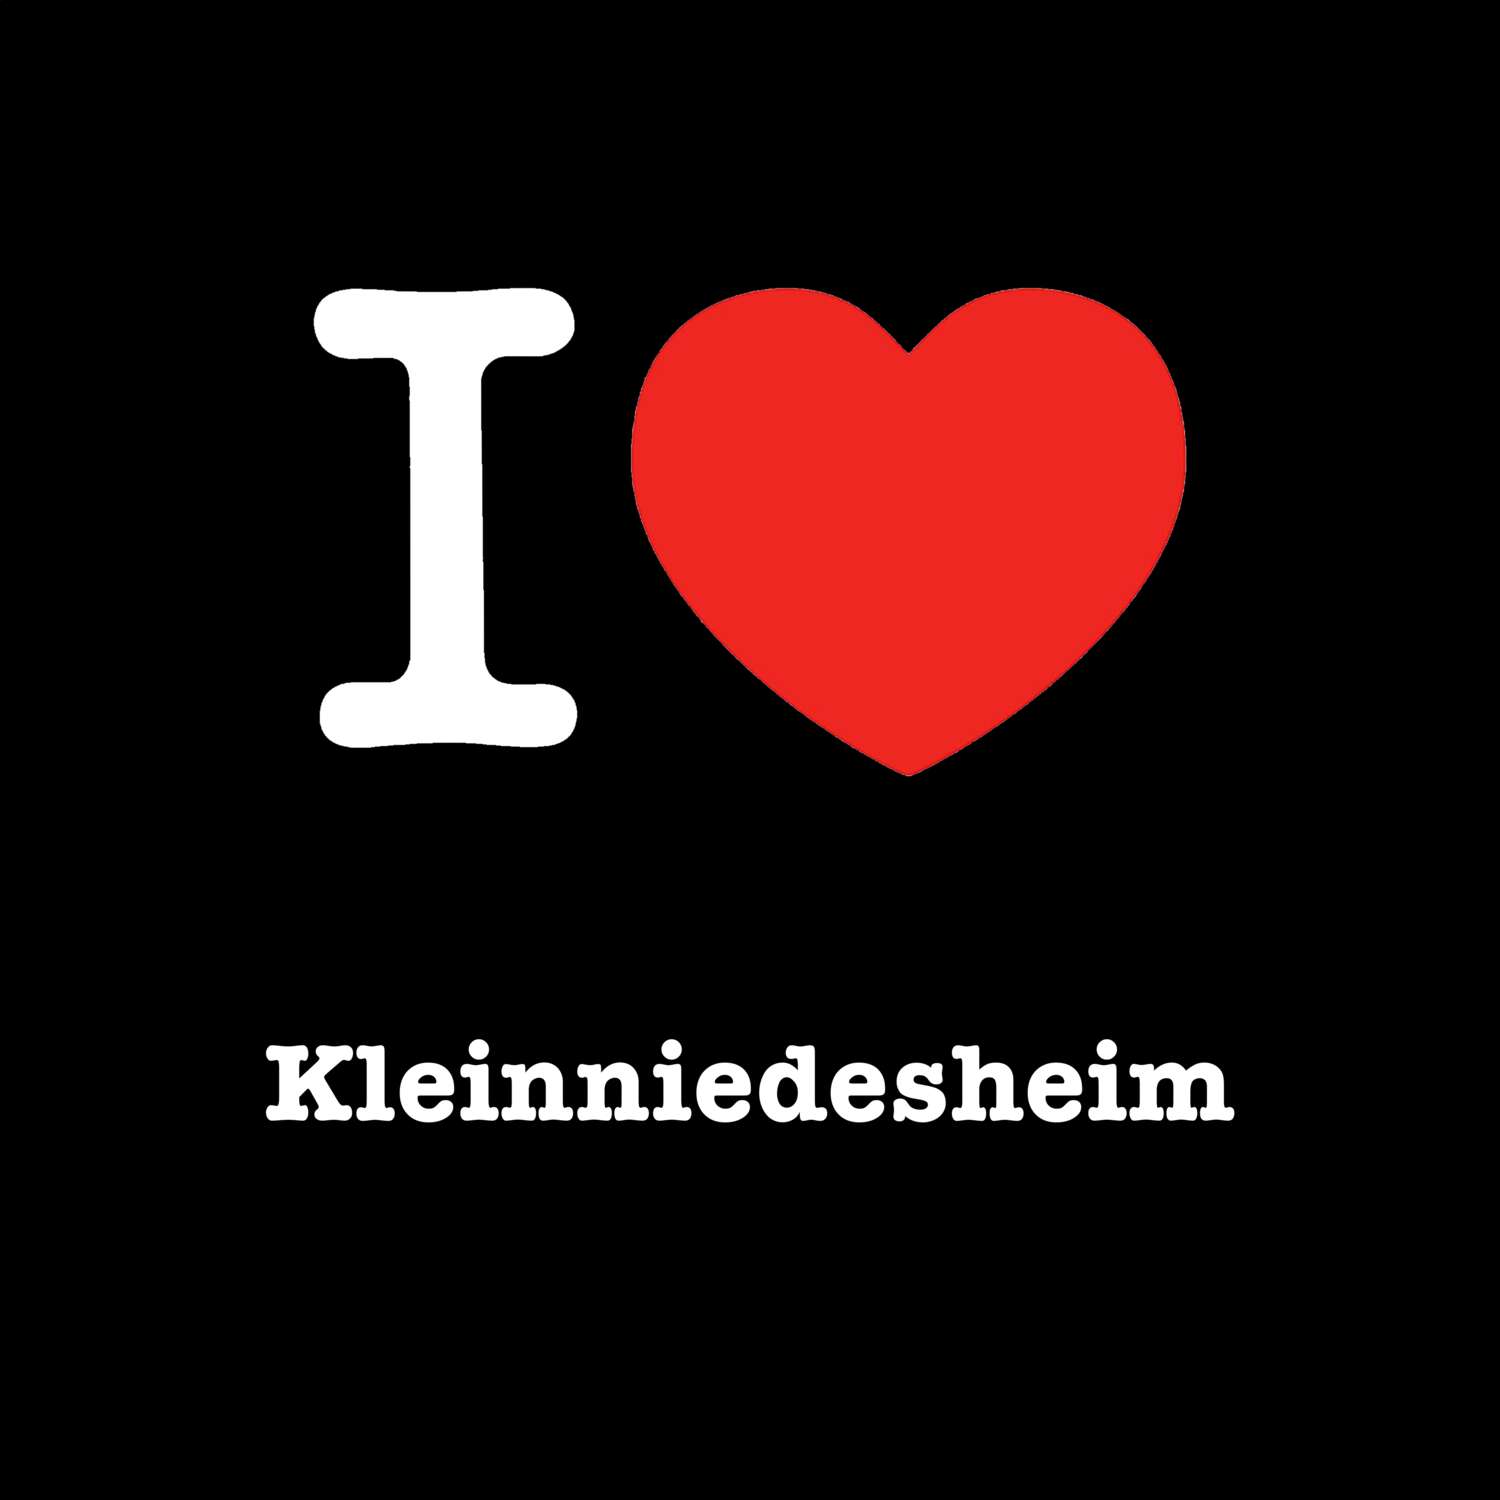 Kleinniedesheim T-Shirt »I love«